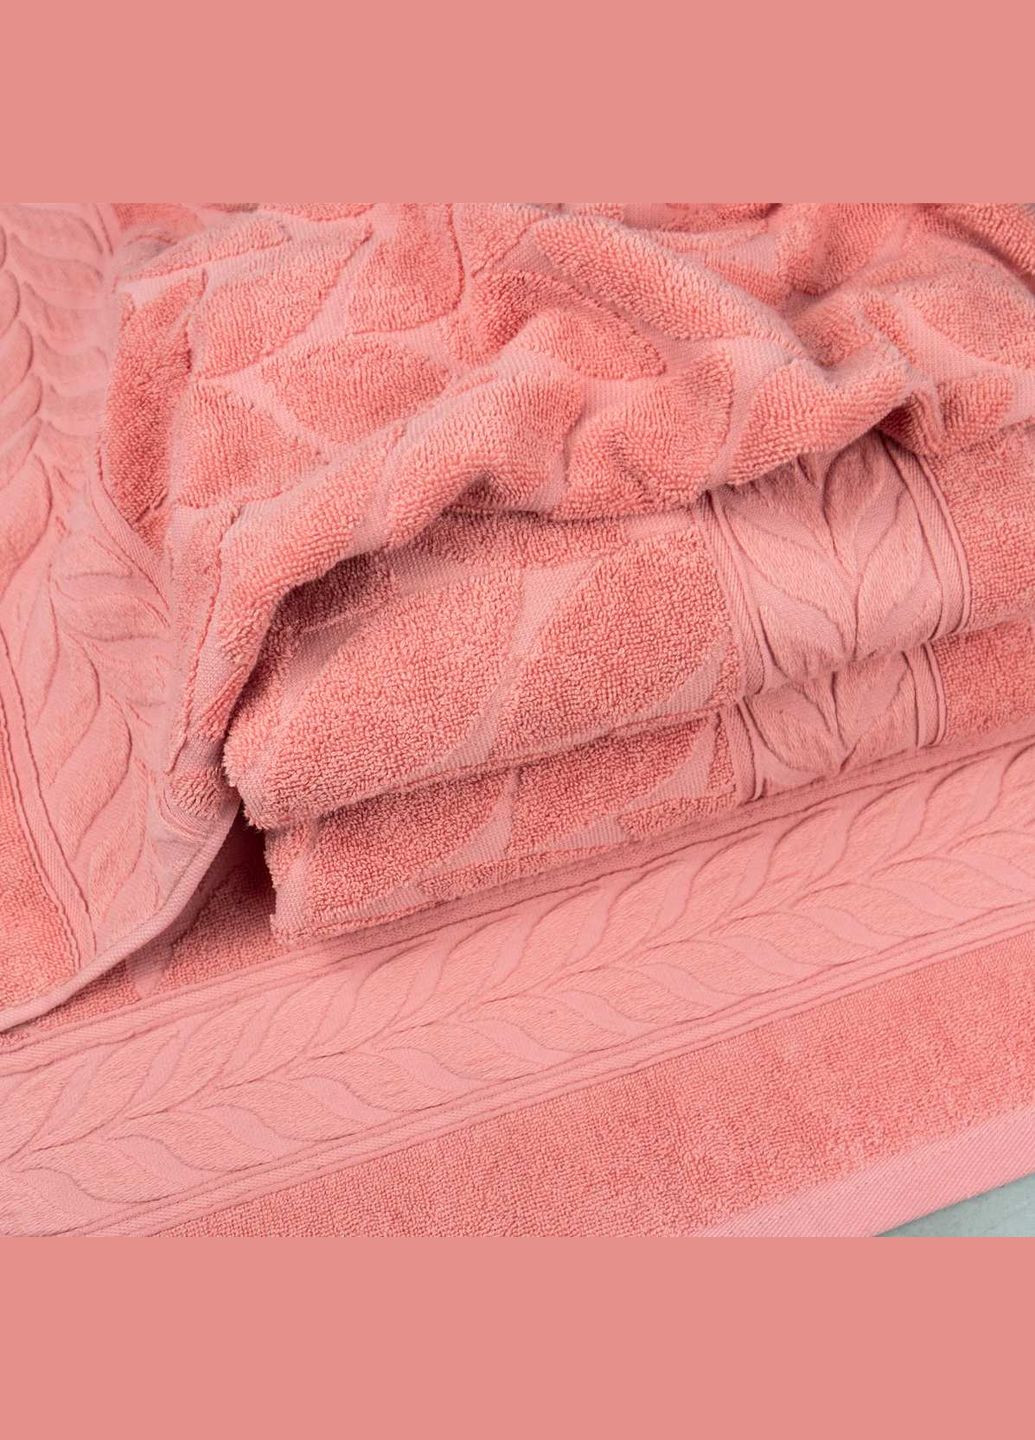 GM Textile набір махрових рушників листя 3шт 50x90см, 50x90см, 70x140см 550г/м2 (рожевий) рожевий виробництво -